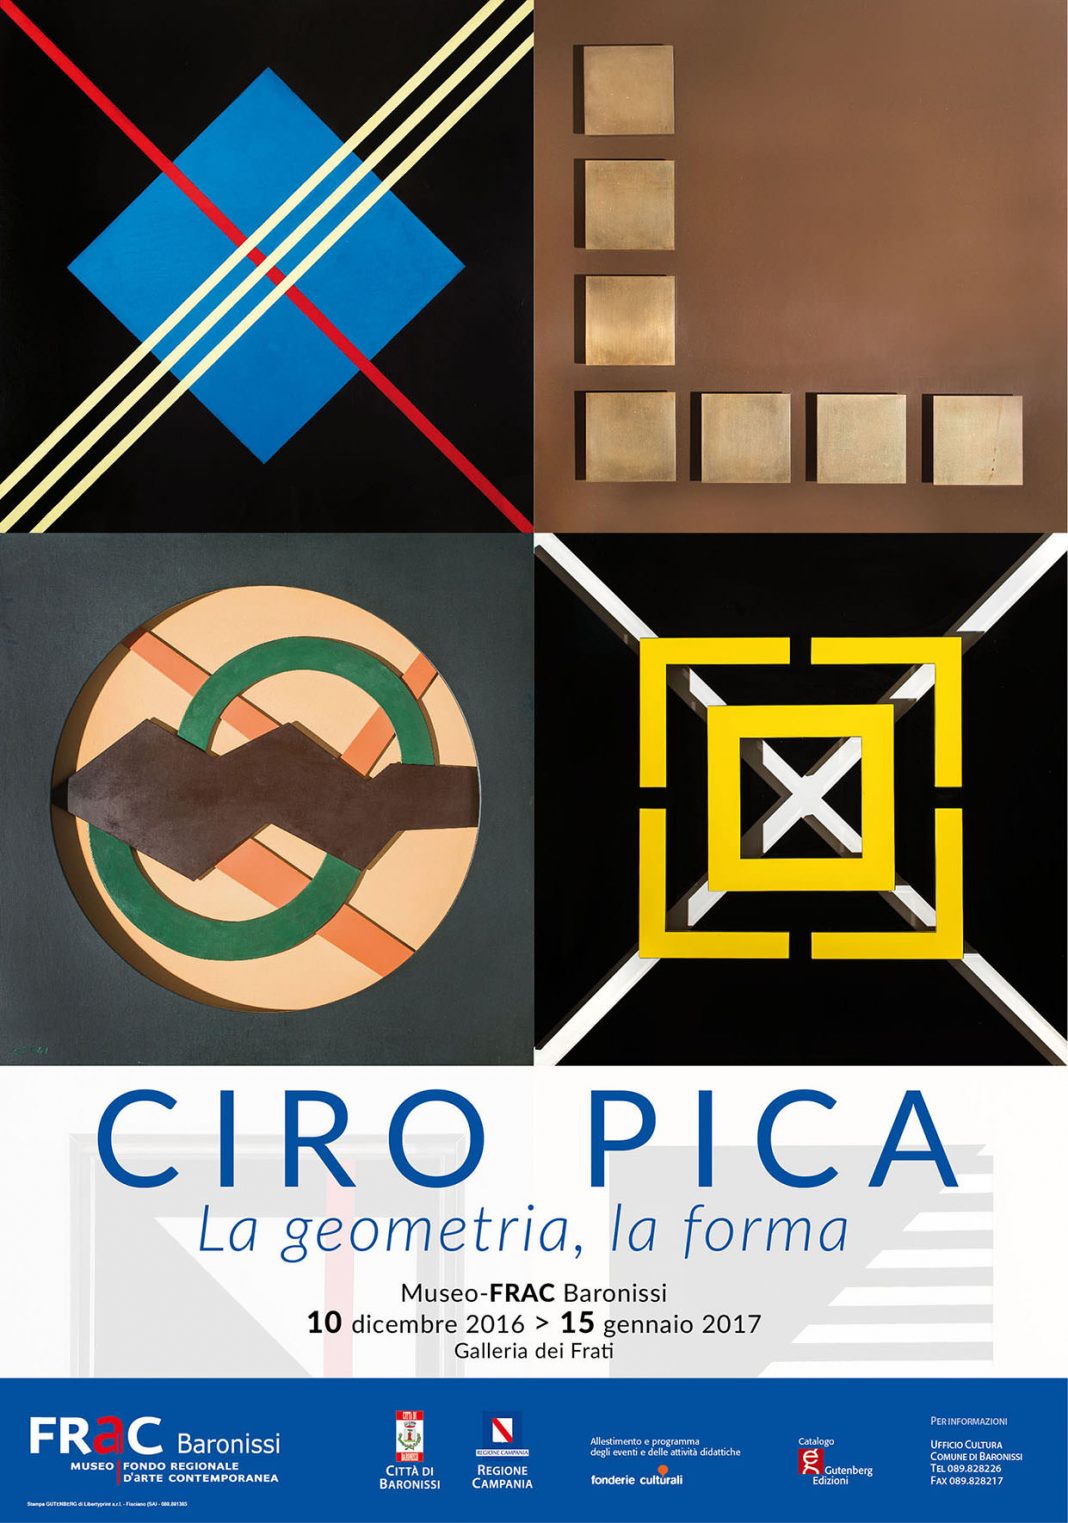 Ciro Pica – La geometria, la formahttps://www.exibart.com/repository/media/eventi/2016/12/ciro-pica-8211-la-geometria-la-forma-1068x1523.jpg